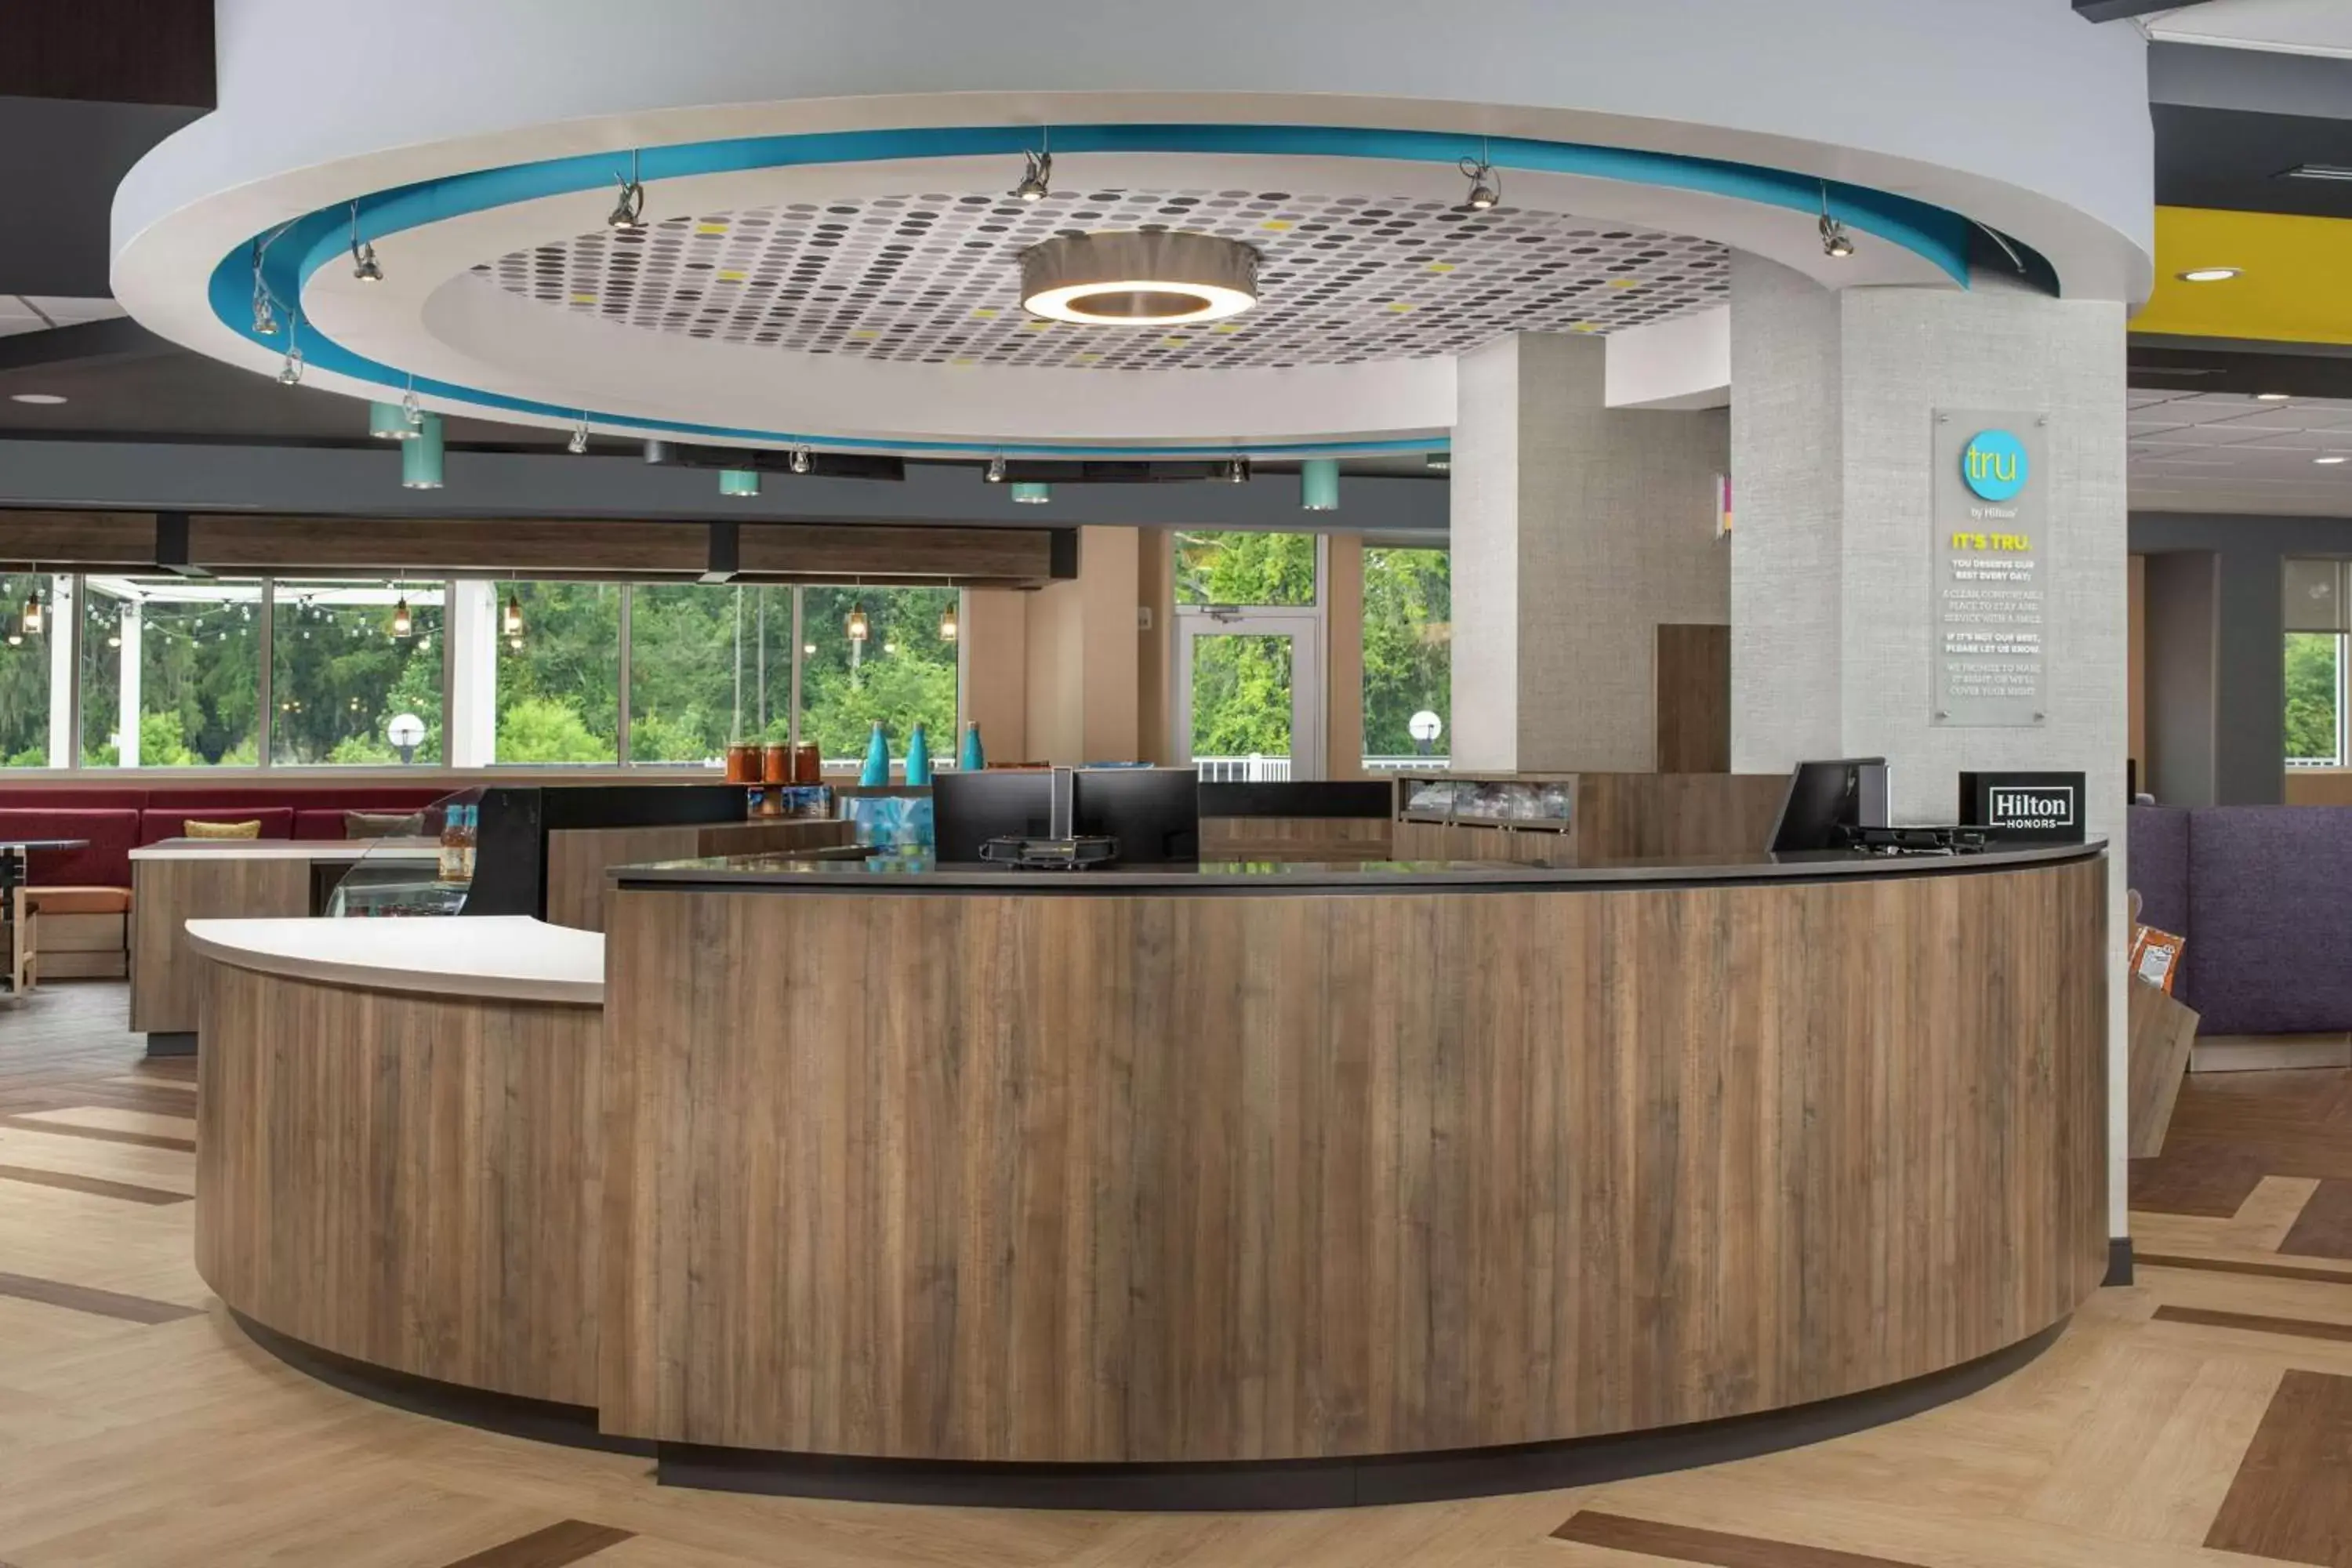 Lobby or reception, Lobby/Reception in Tru By Hilton Lake City